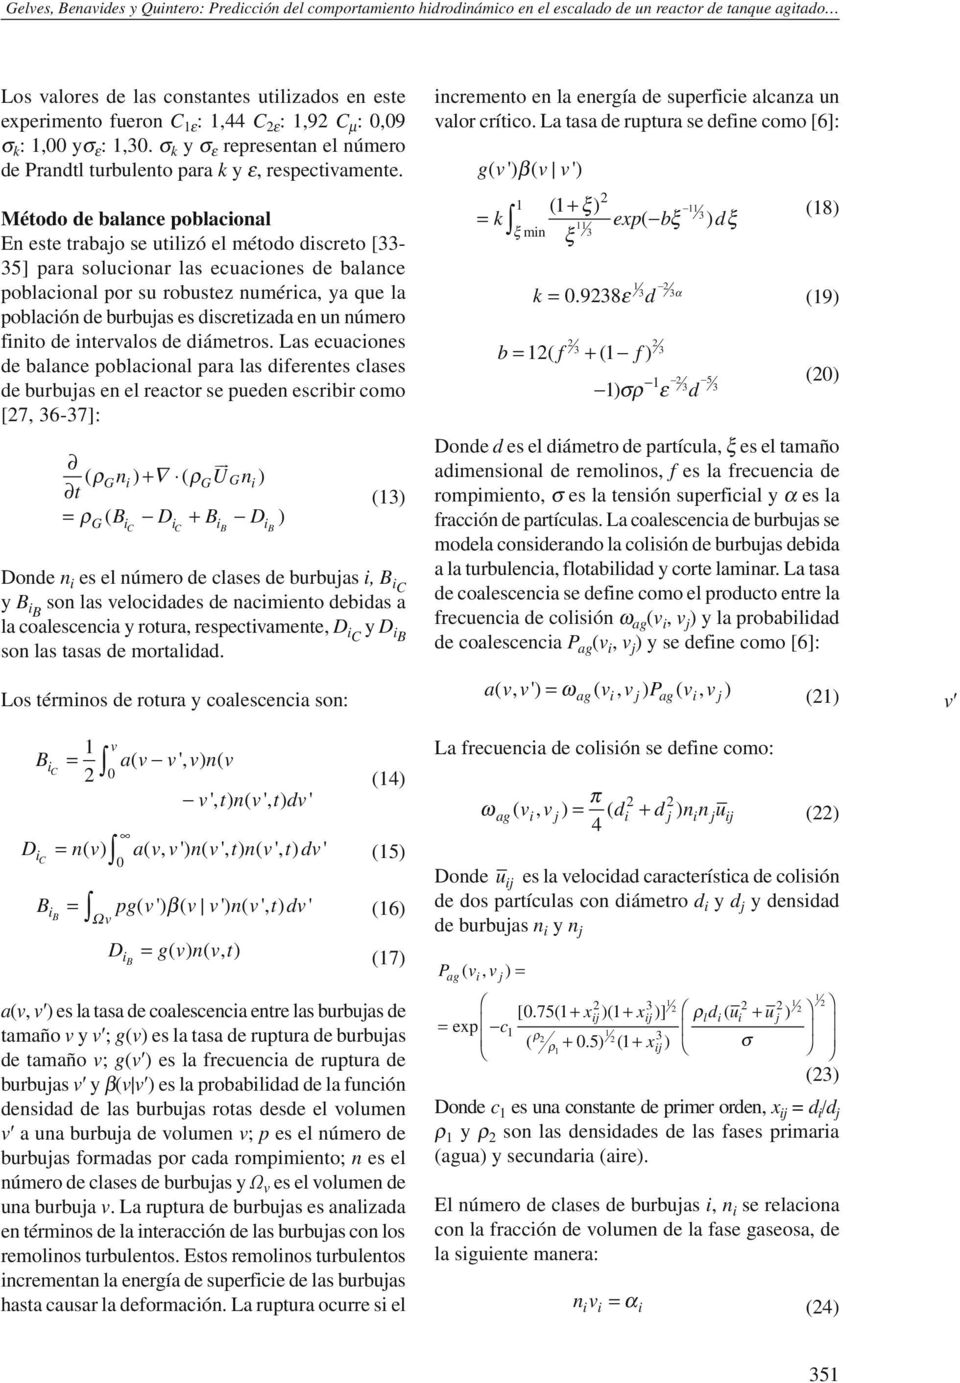 Método de balance poblacional En este trabajo se utilizó el método discreto [33-35] para solucionar las ecuaciones de balance poblacional por su robustez numérica, ya que la población de burbujas es